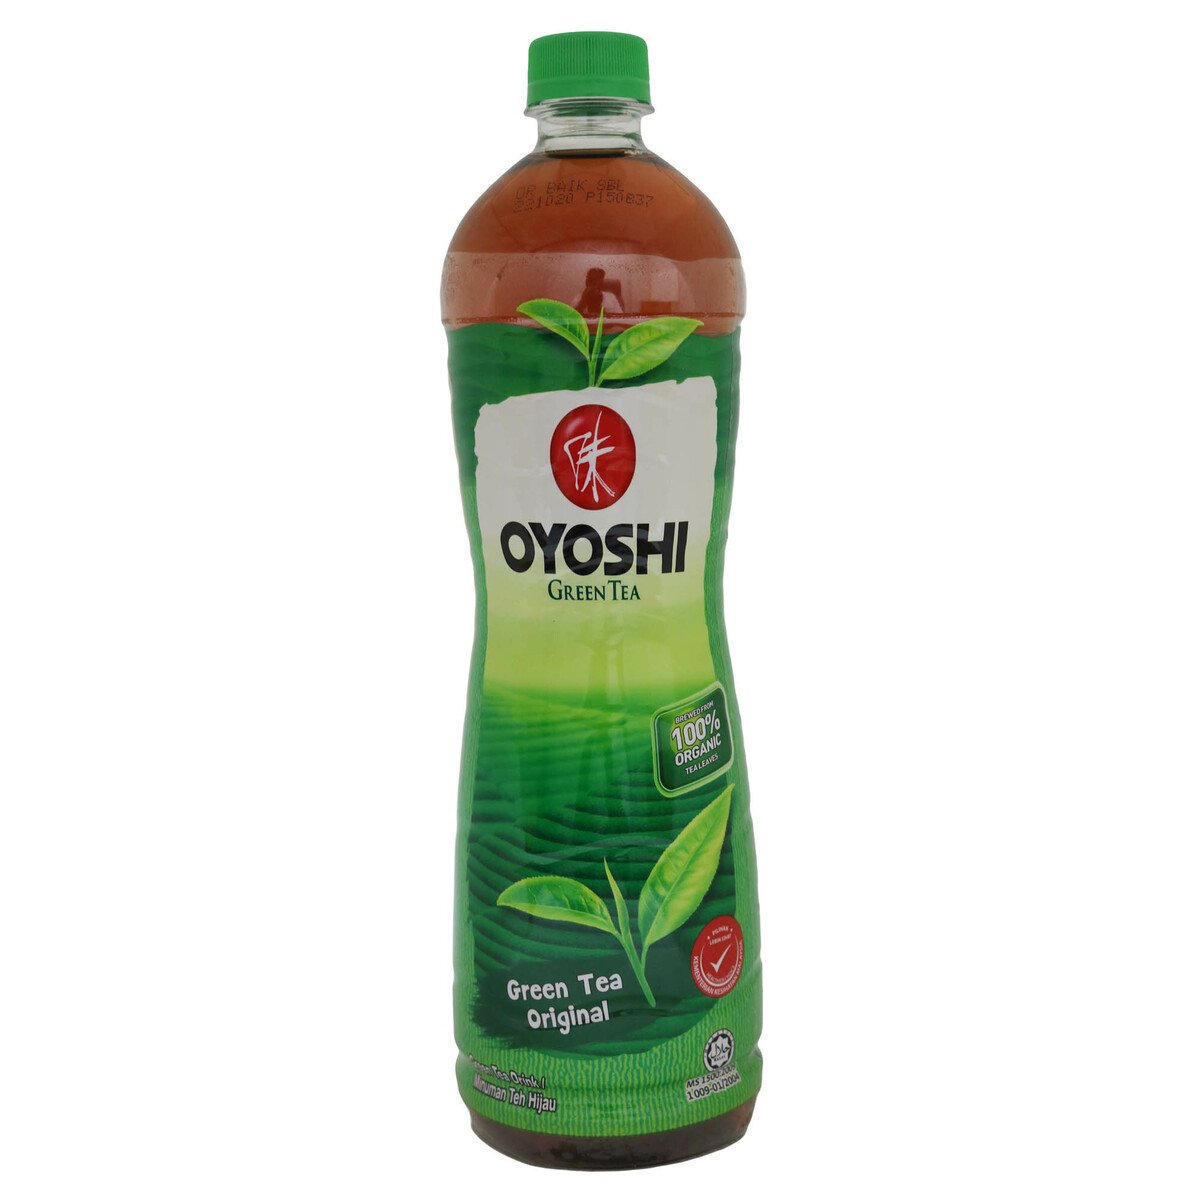 Oyoshi Green Tea Original Pet 1Litre